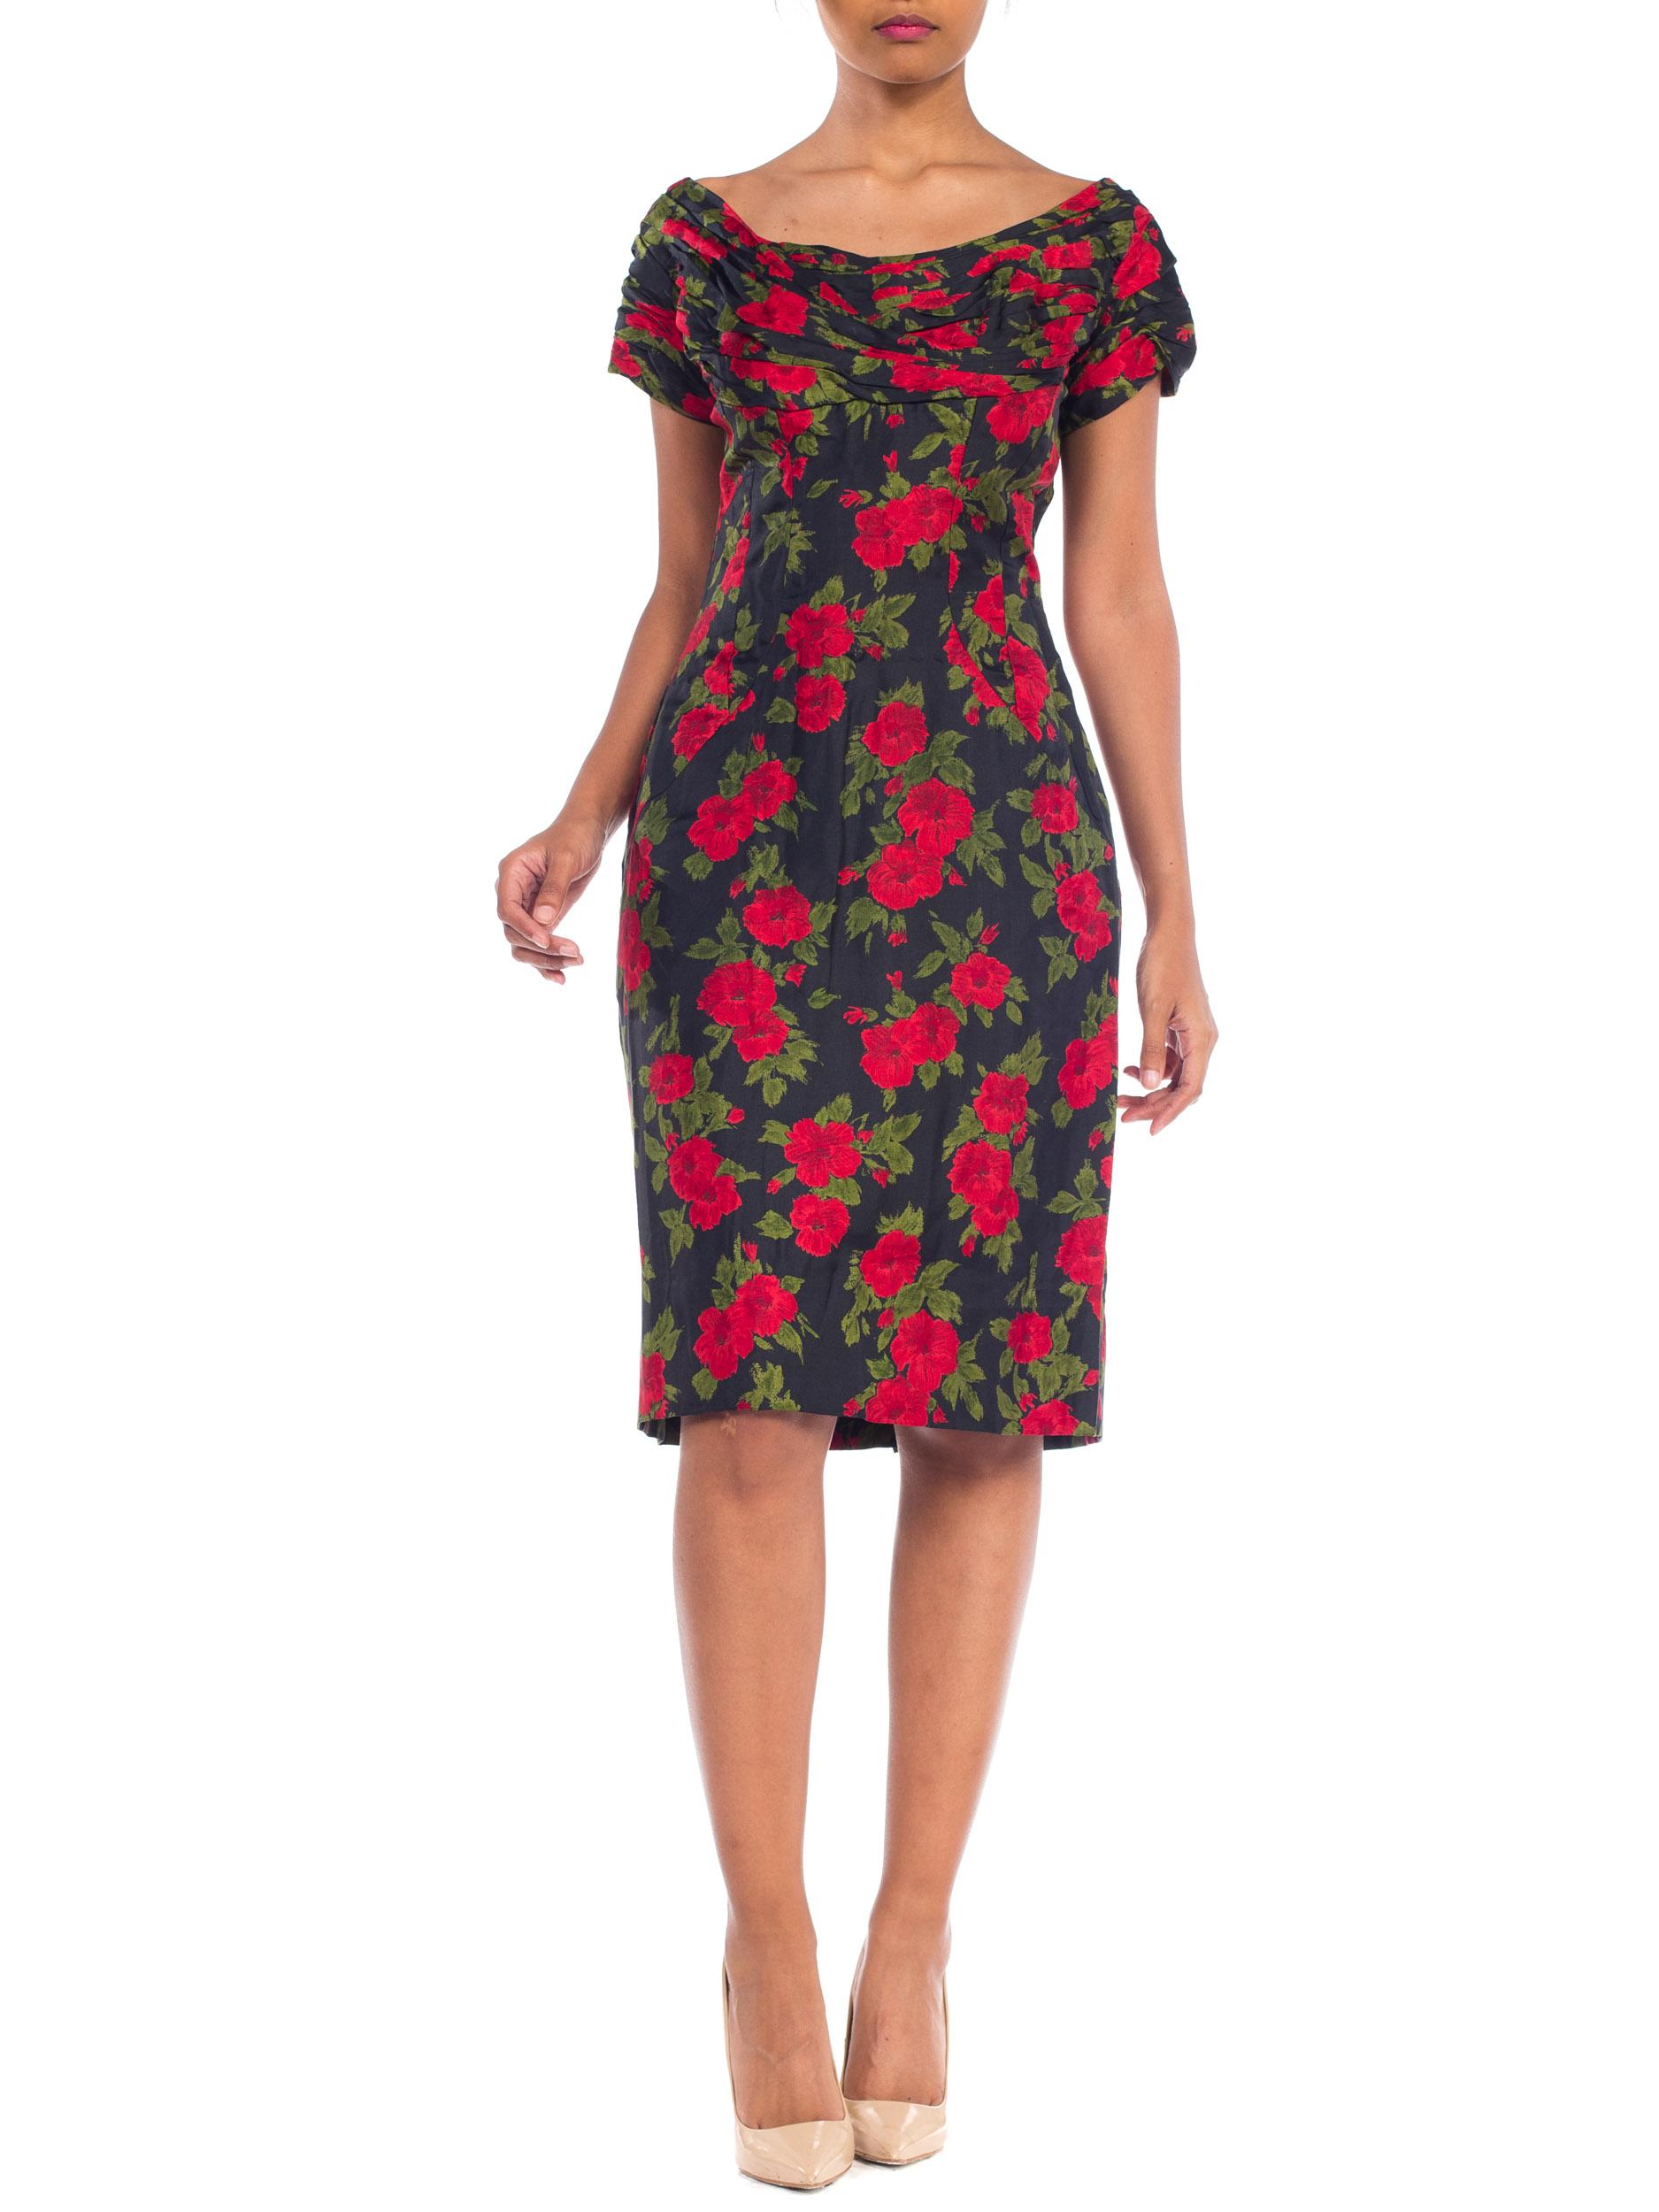 1950S DOLCE & GABBANA Stil Seide Twill Rot Schwarz Klassisch Rose Floral Gedruckt Kleid Mit Hand Drapiert Ausschnitt